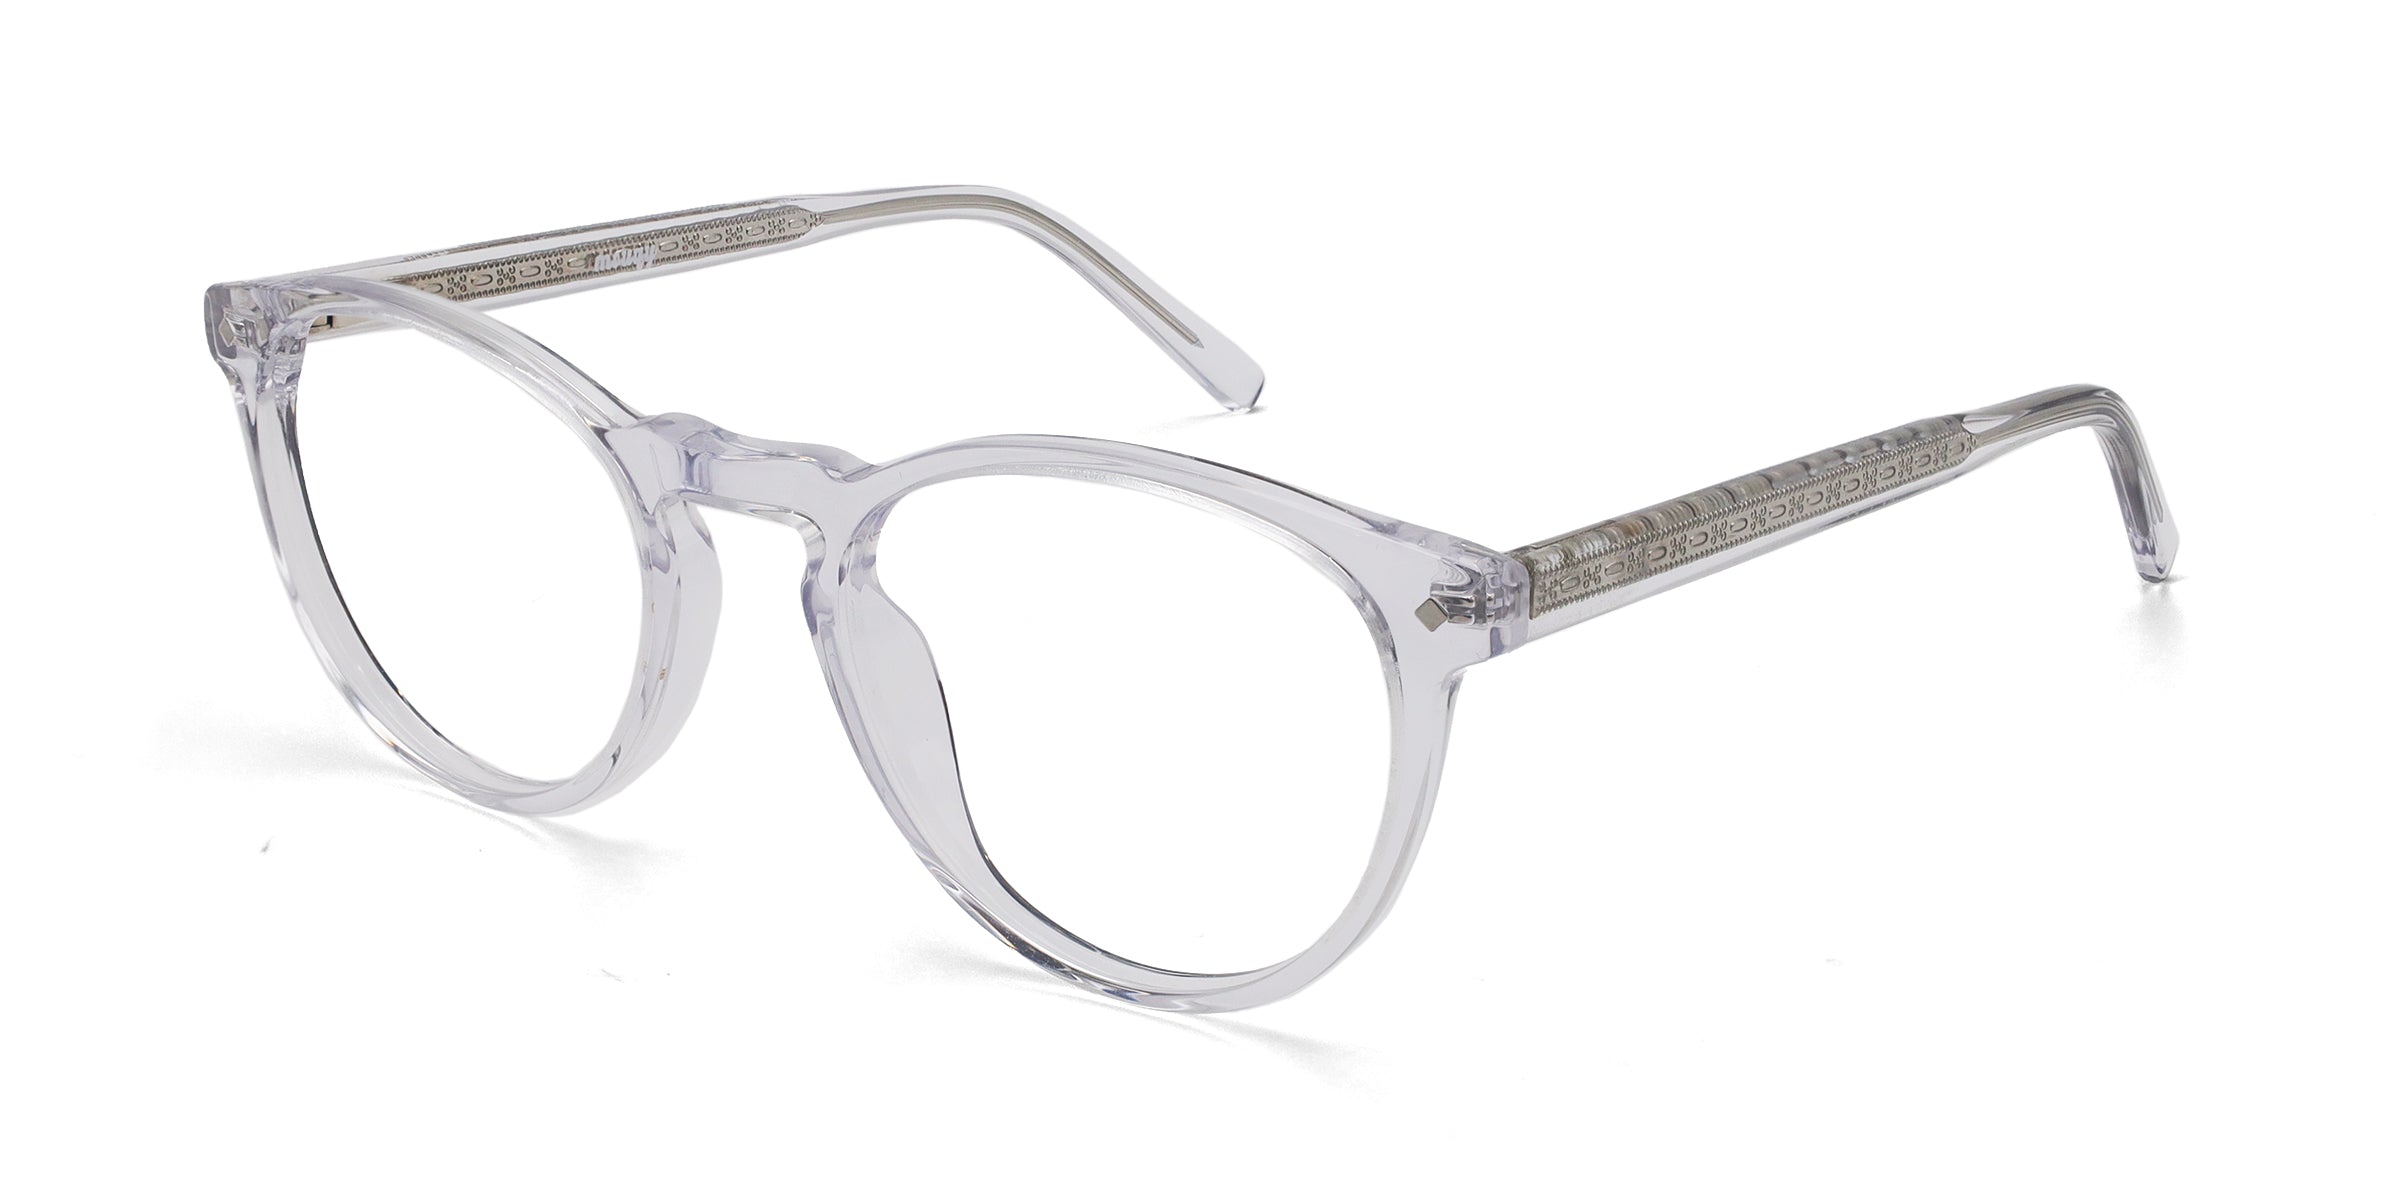 KinglyOval Transparent eyeglasses frames angled view